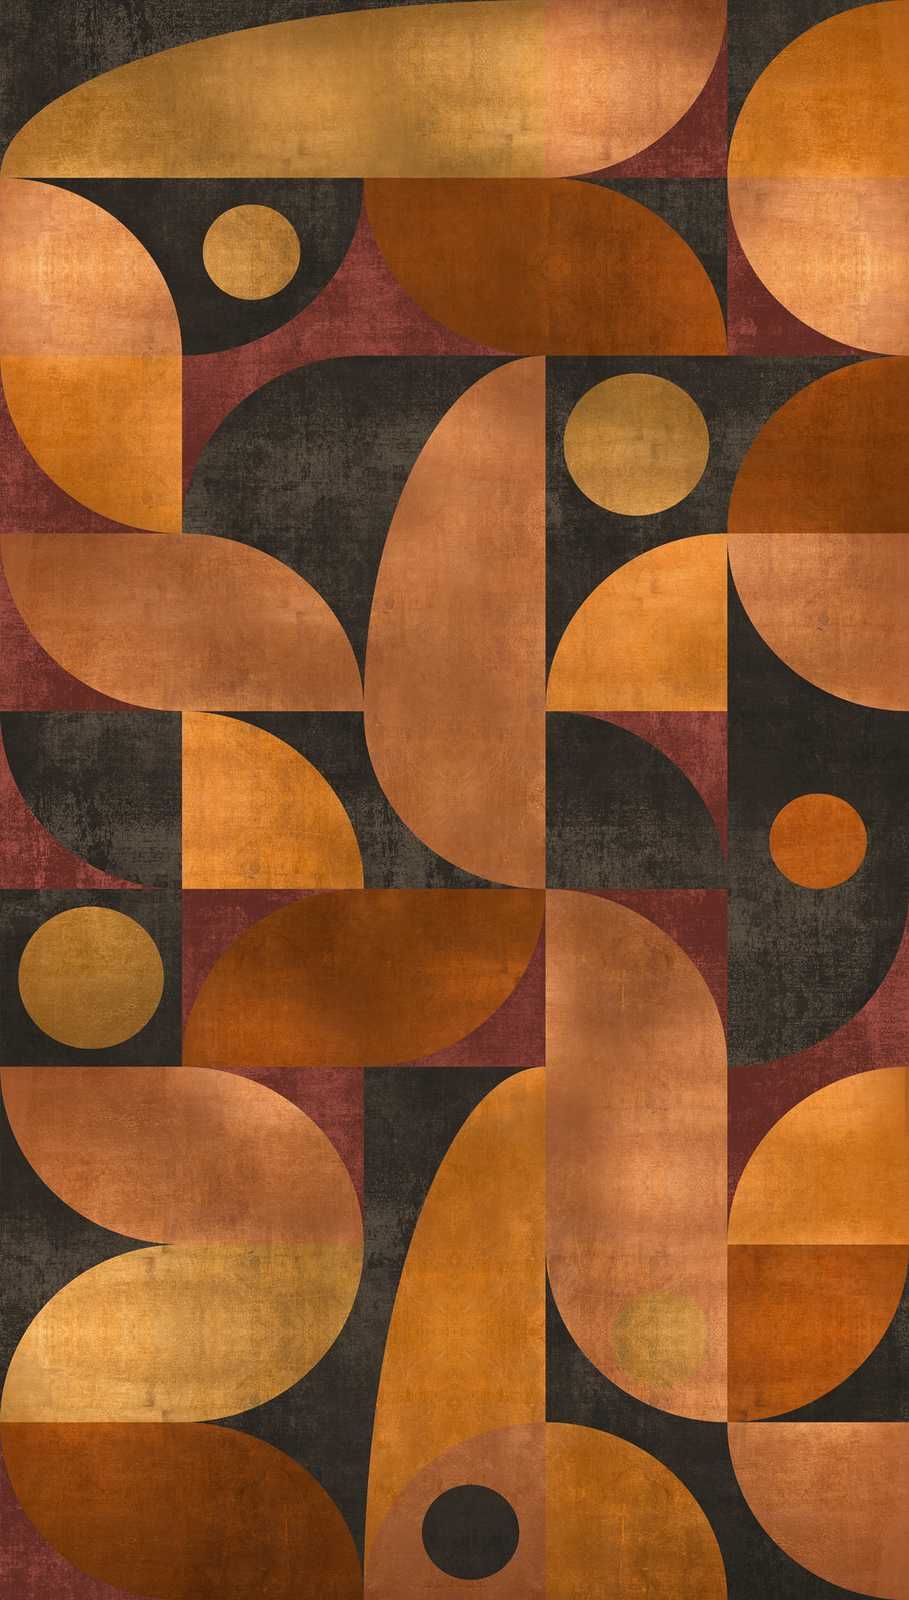             Vliestapete in warmen Farbtönen mit grafischen runden Muster – Orange, Braun, Rot
        